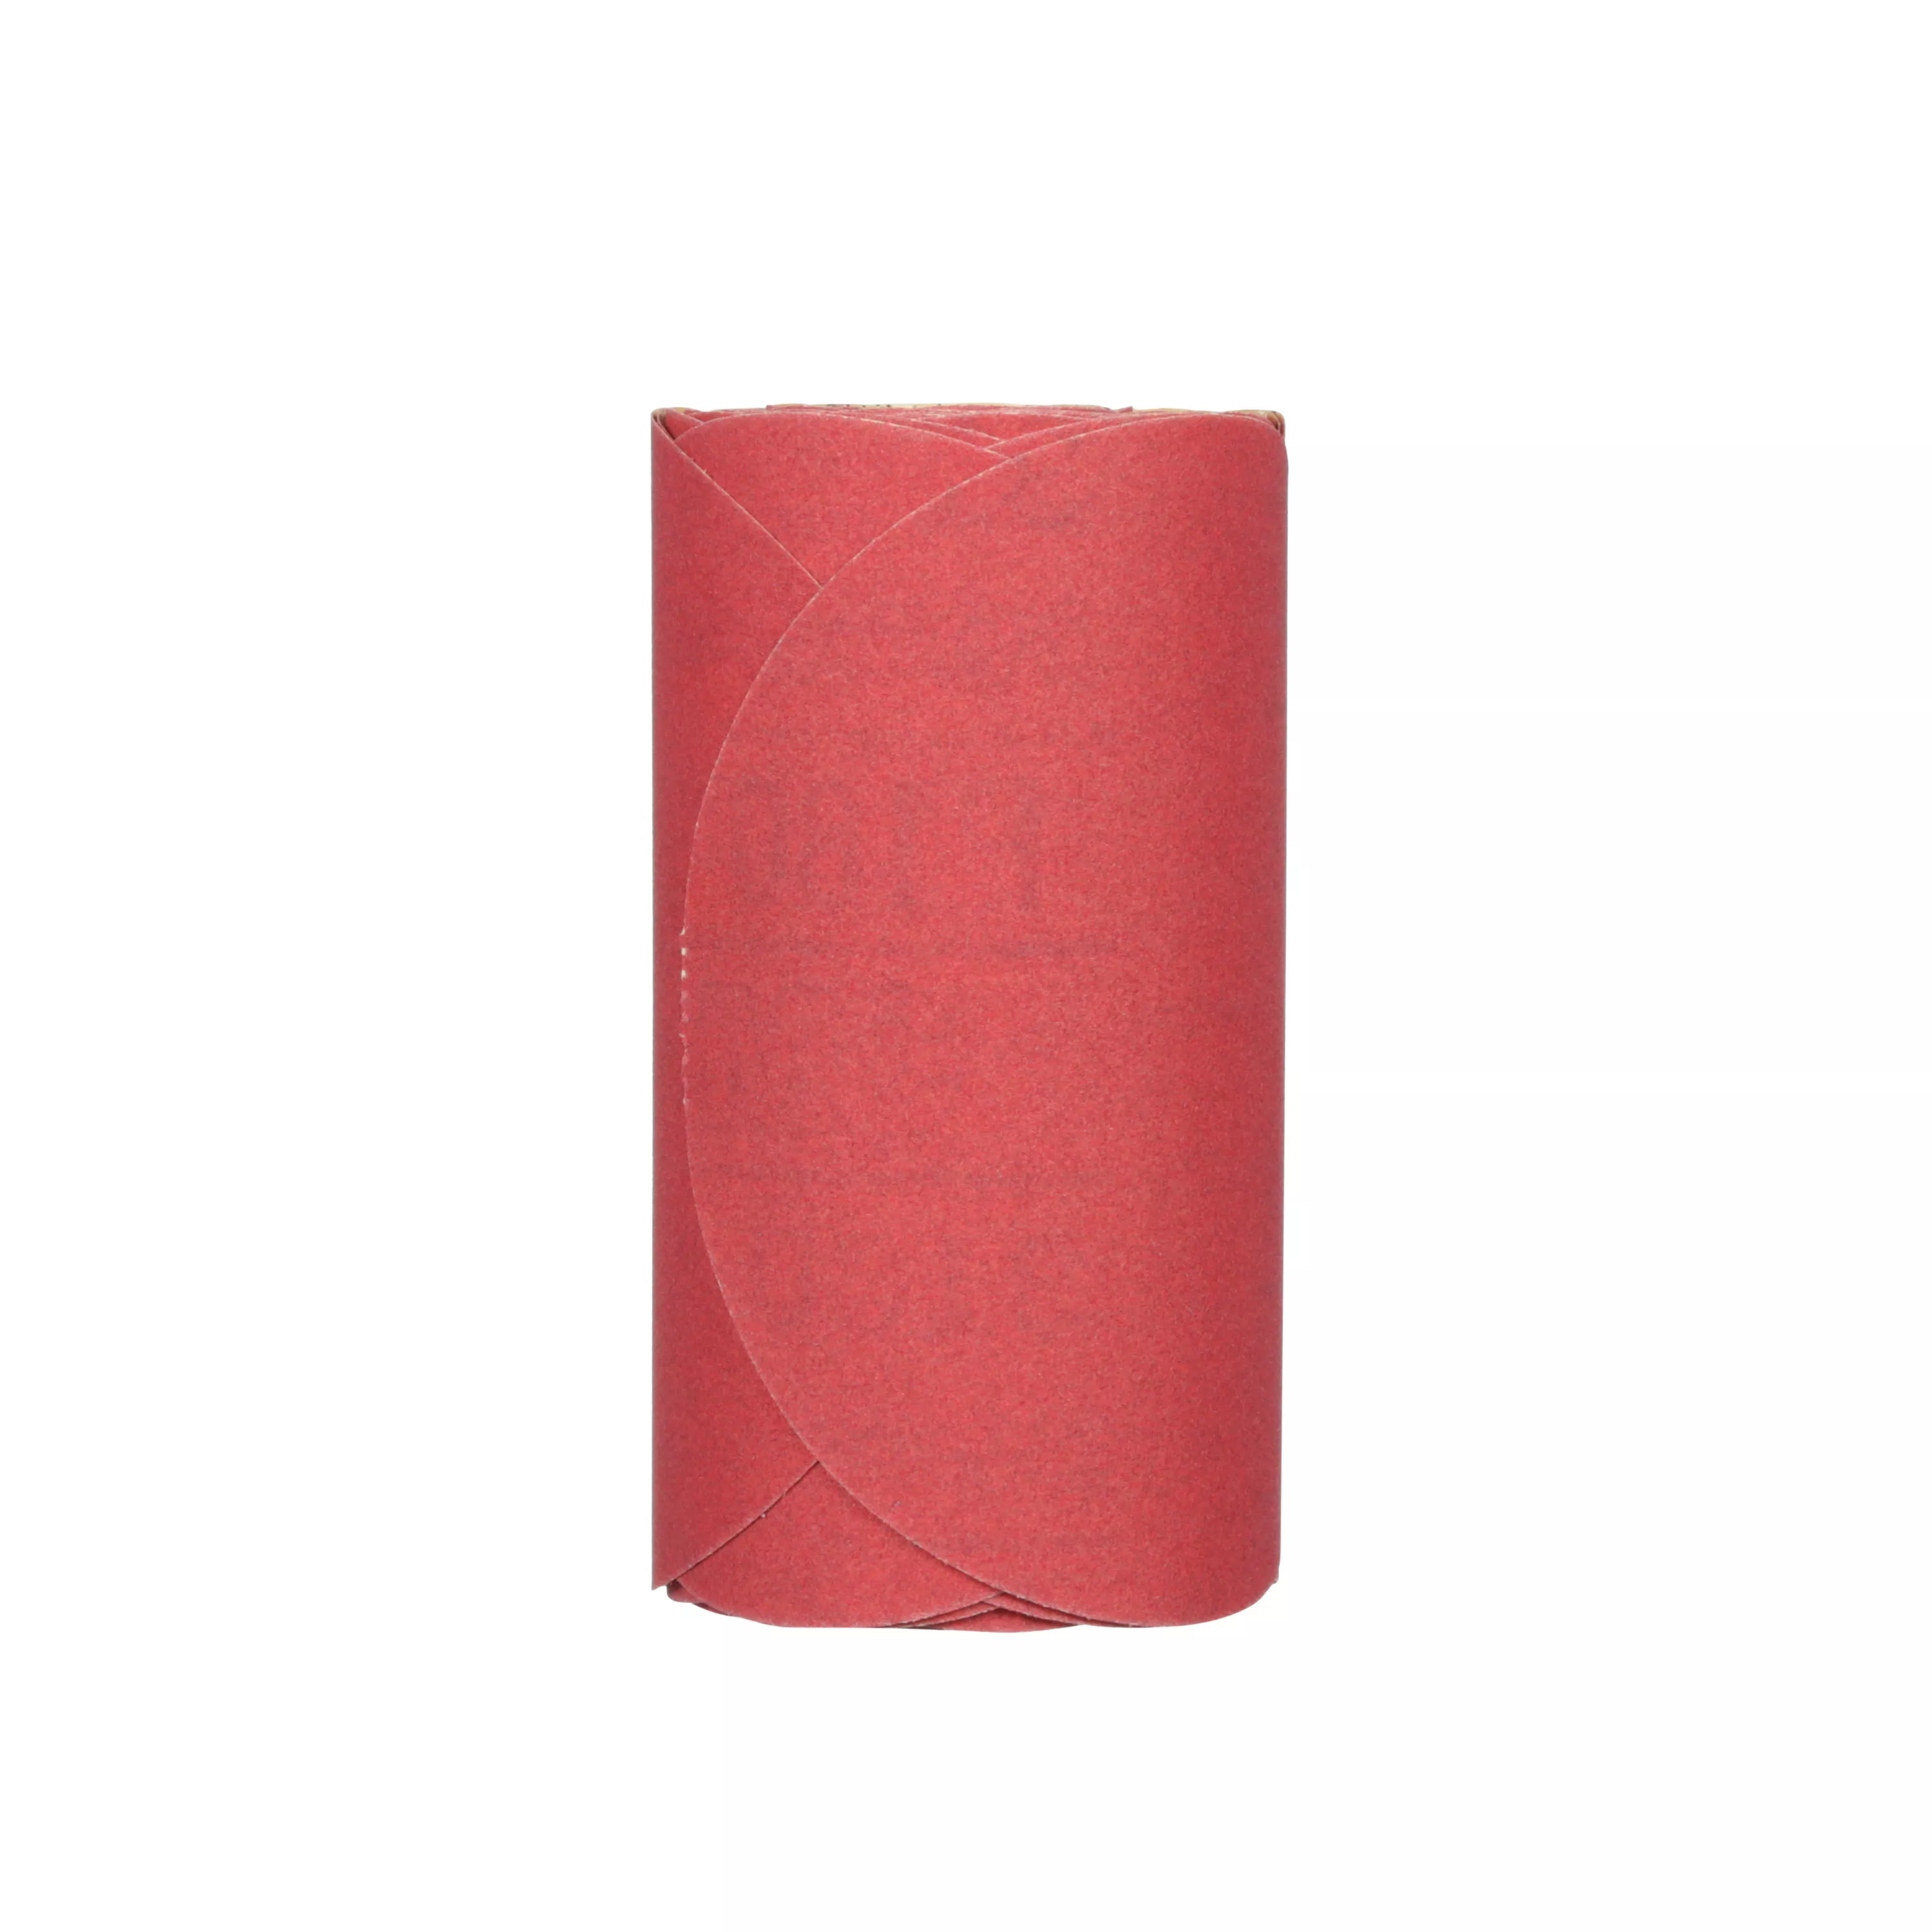 3M™ Red Abrasive Stikit™ Disc, 01112, 6 in, P180 grade, 100 discs per
roll, 6 rolls per case